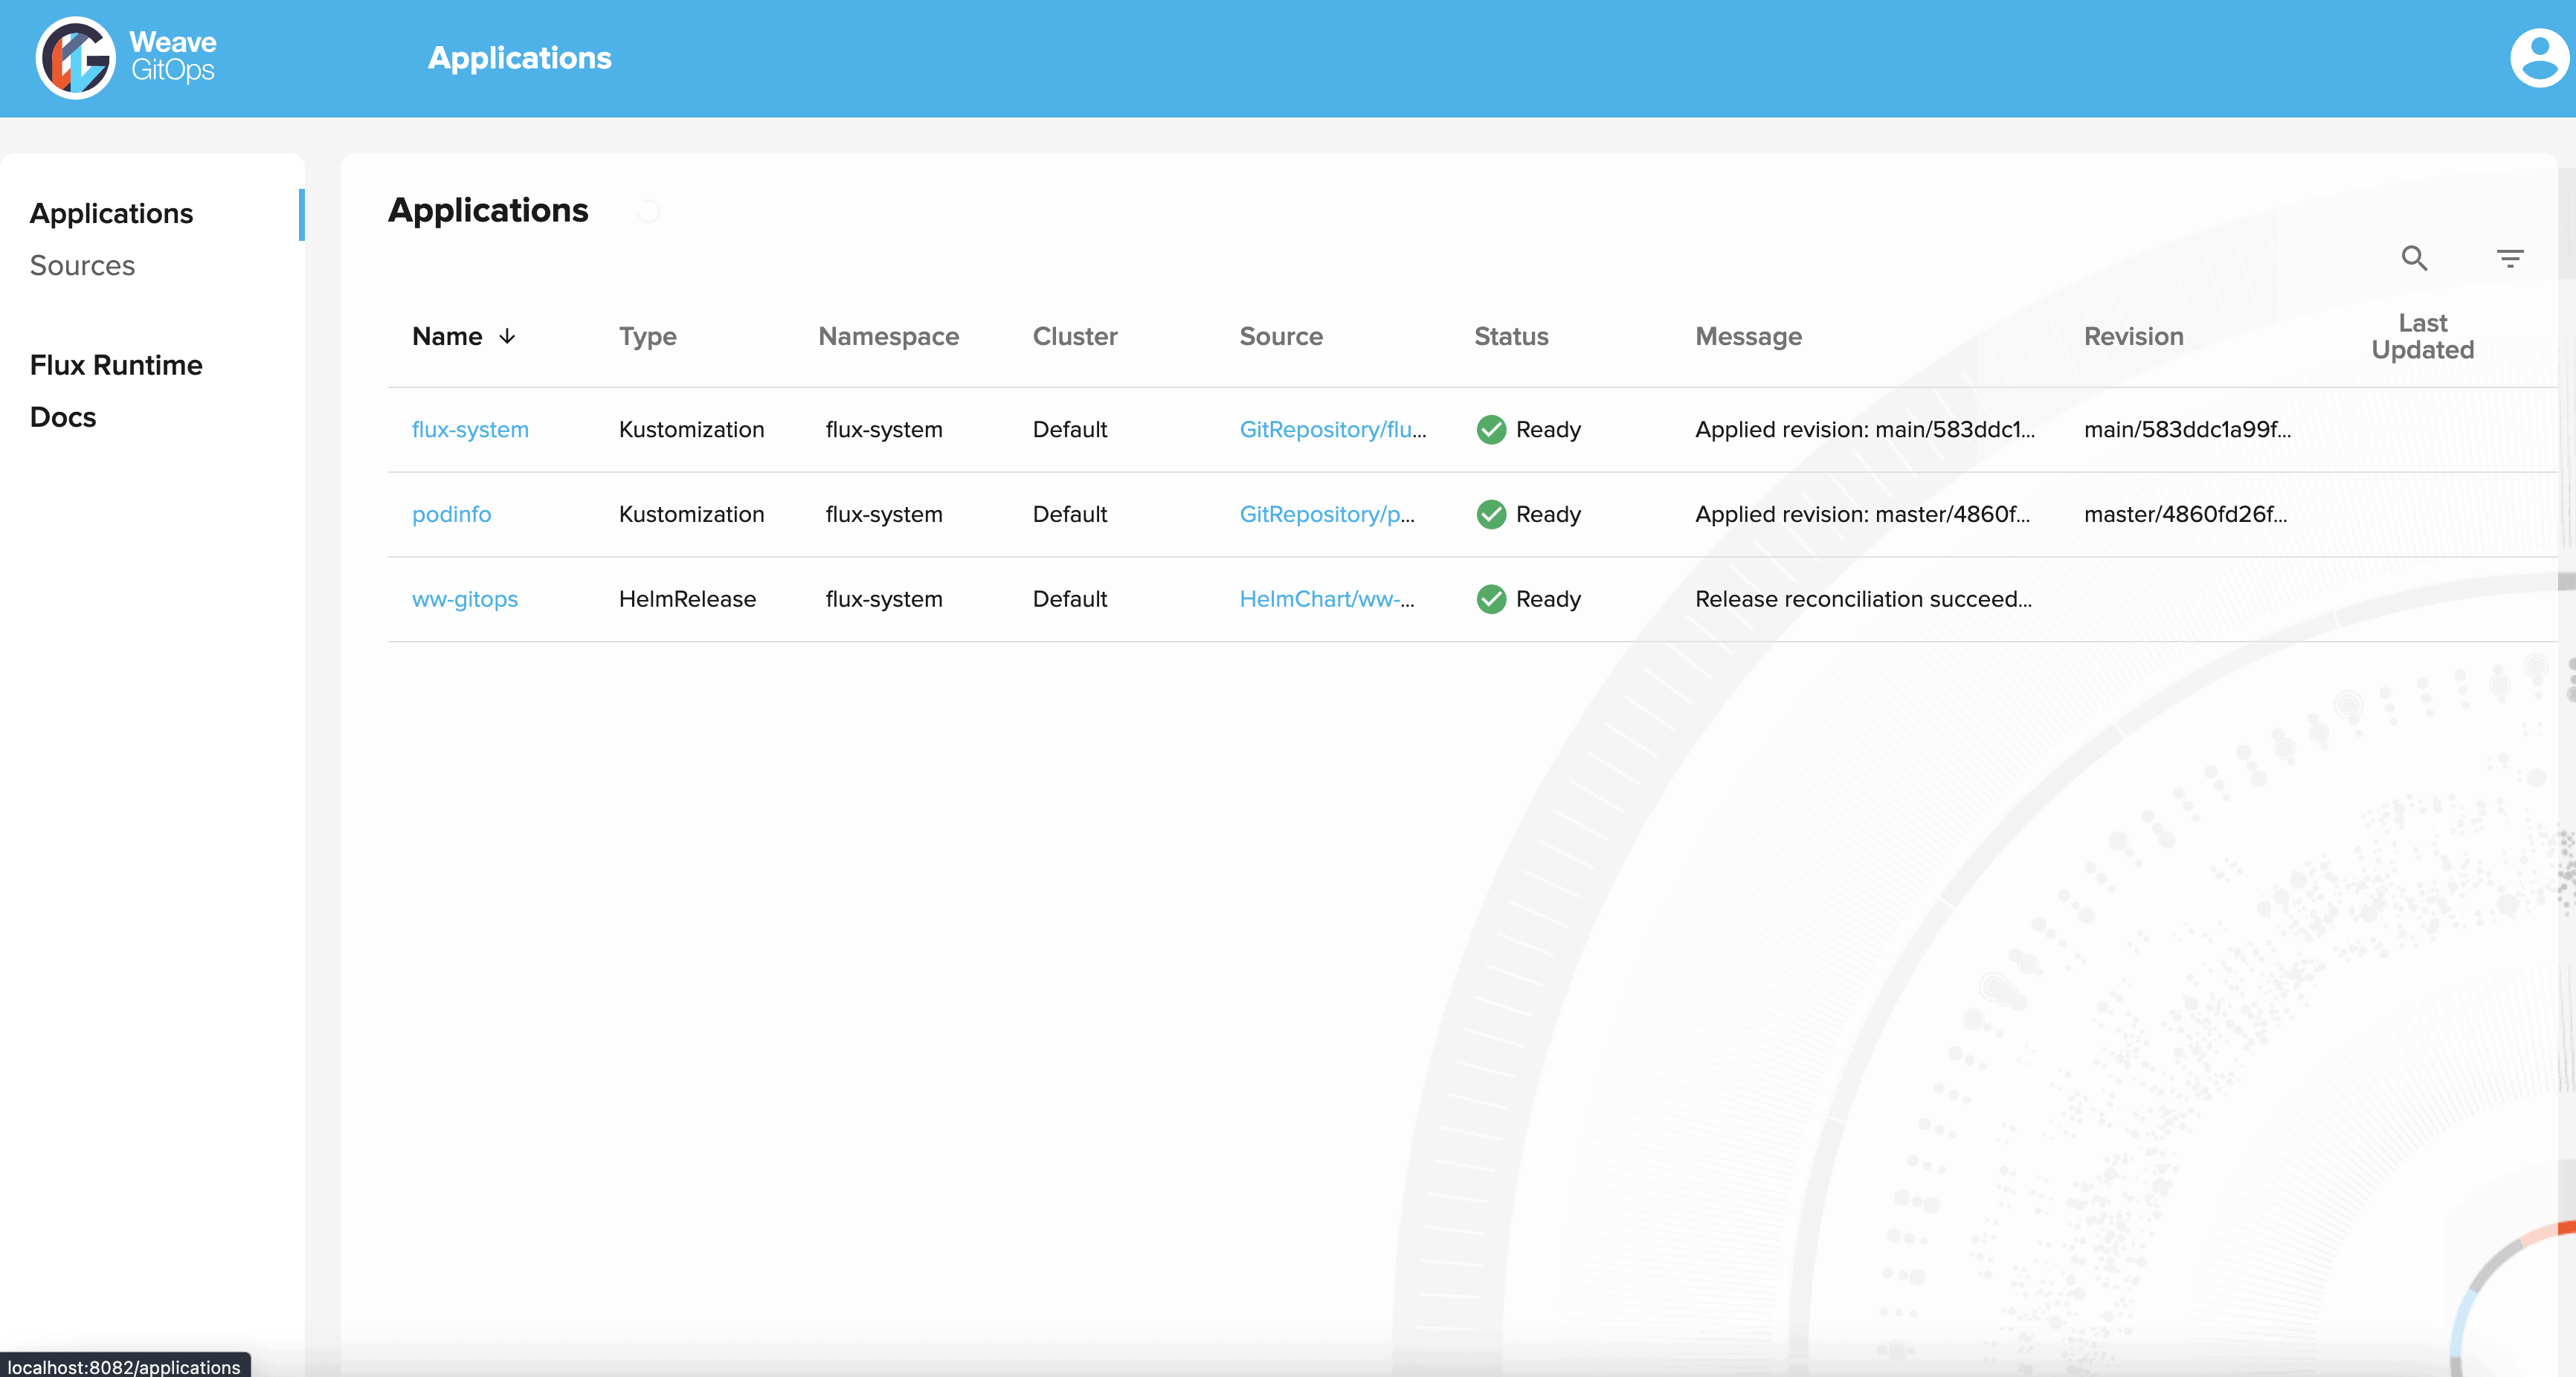 Screenshot showing Weave GitOps applications